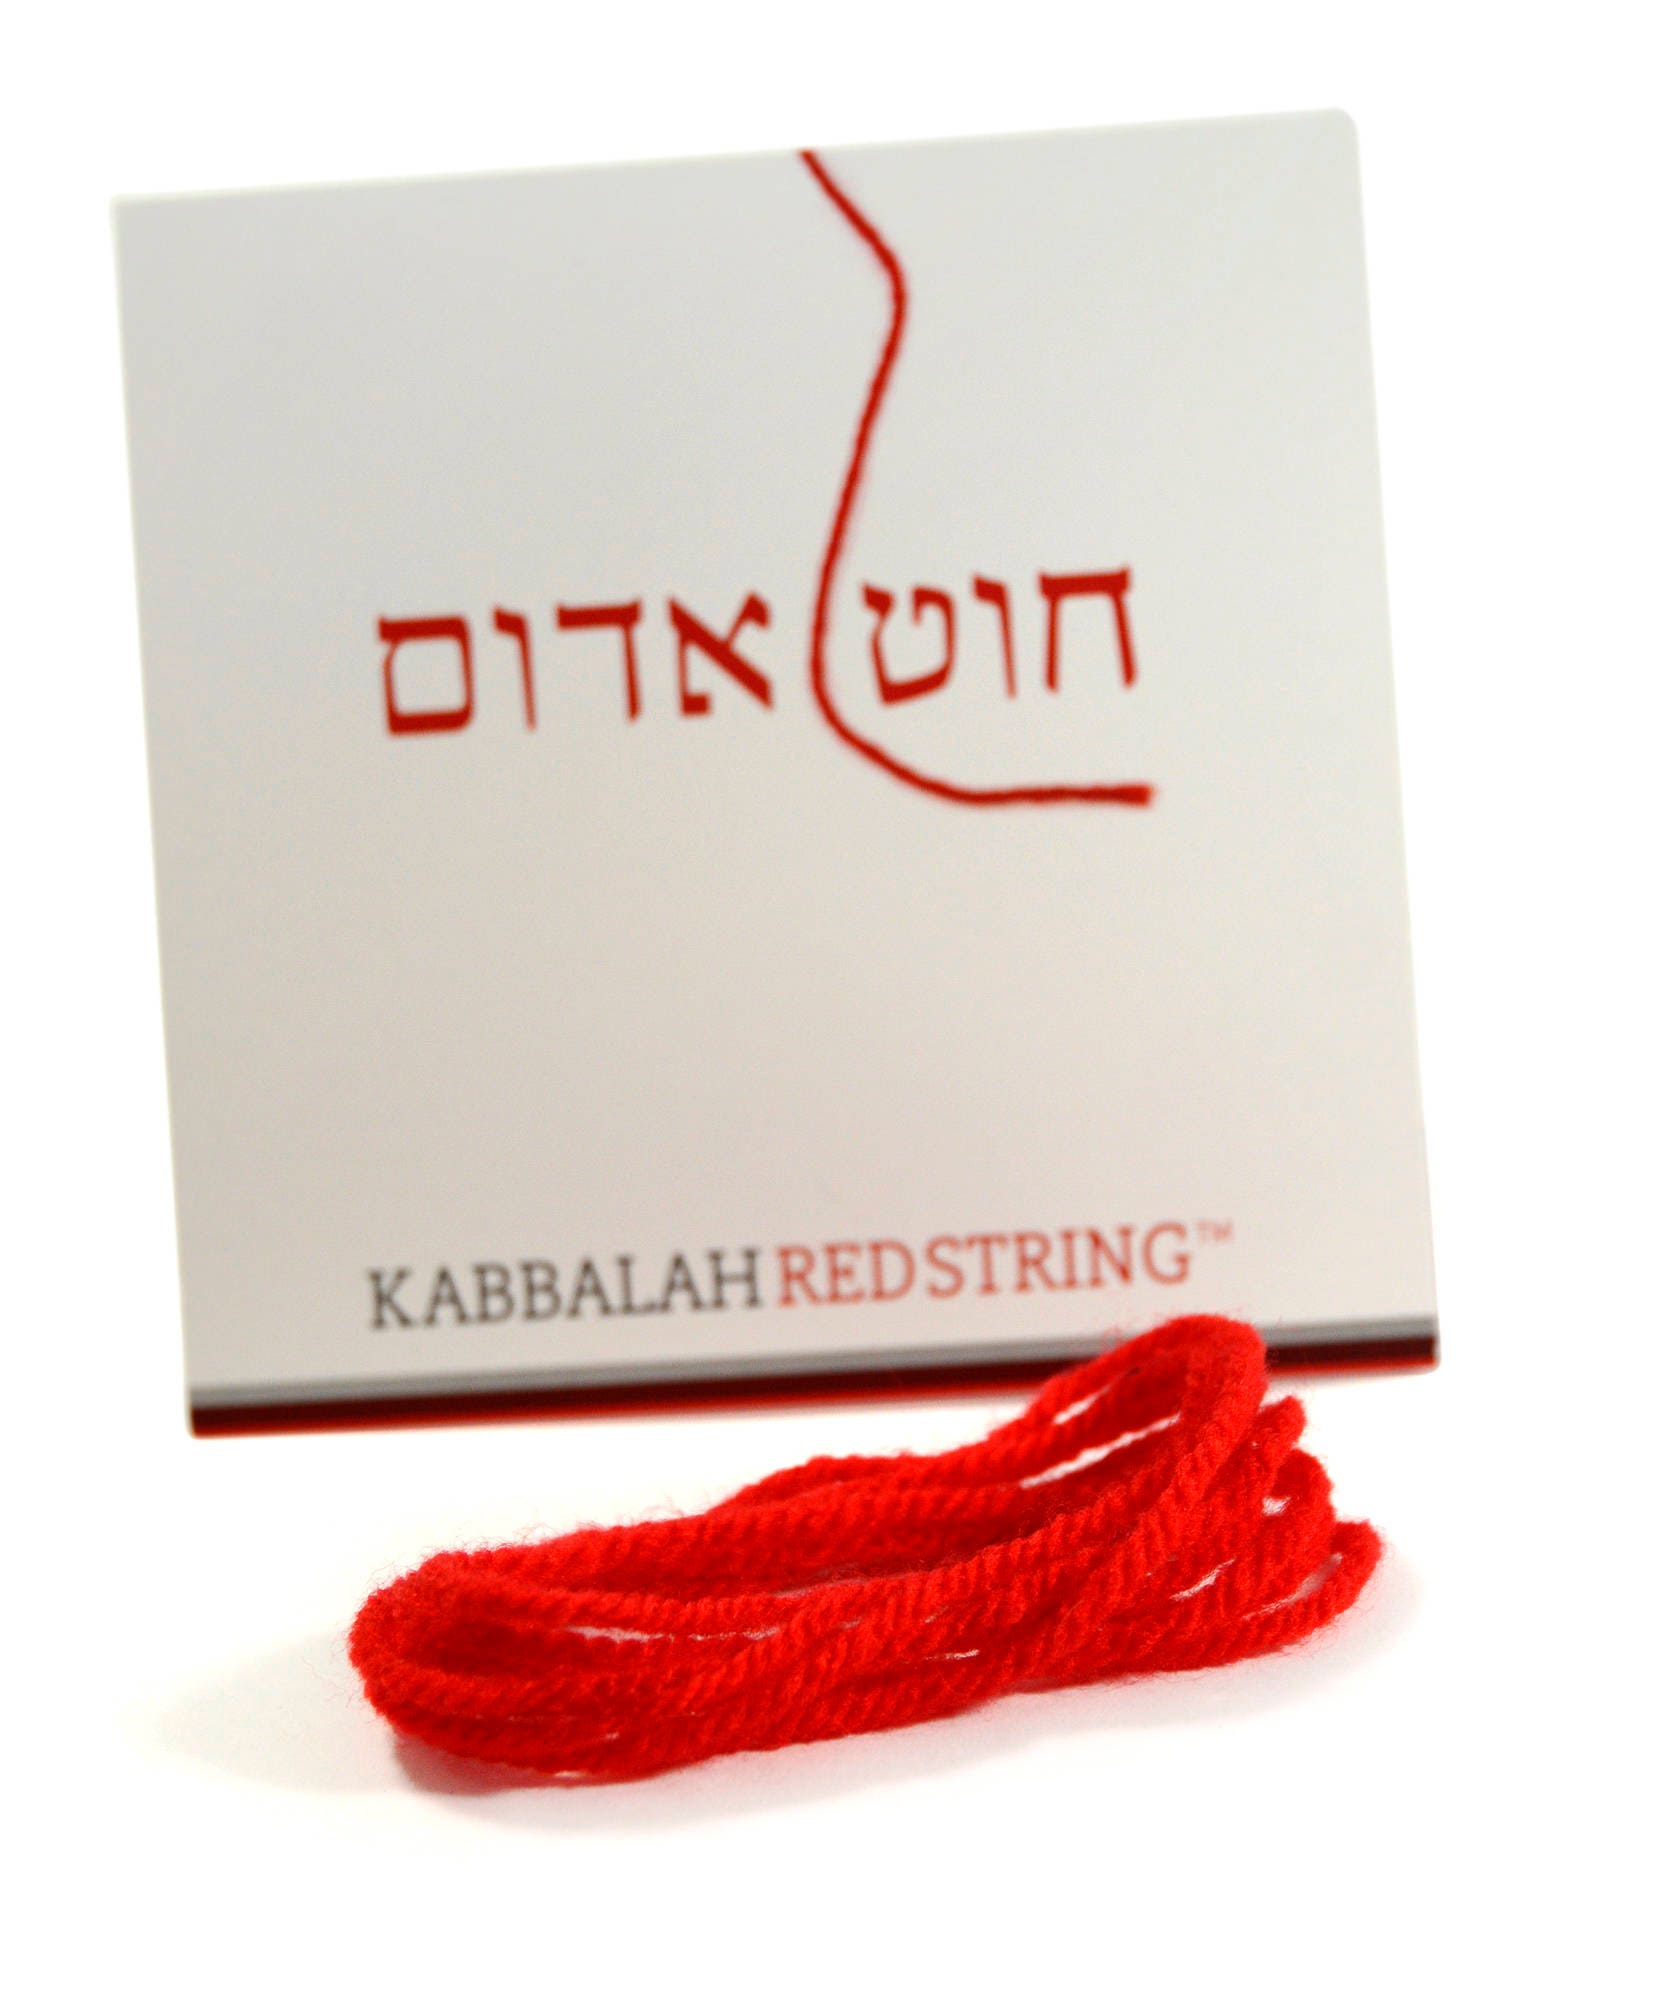 Red string (Kabbalah) - Wikipedia